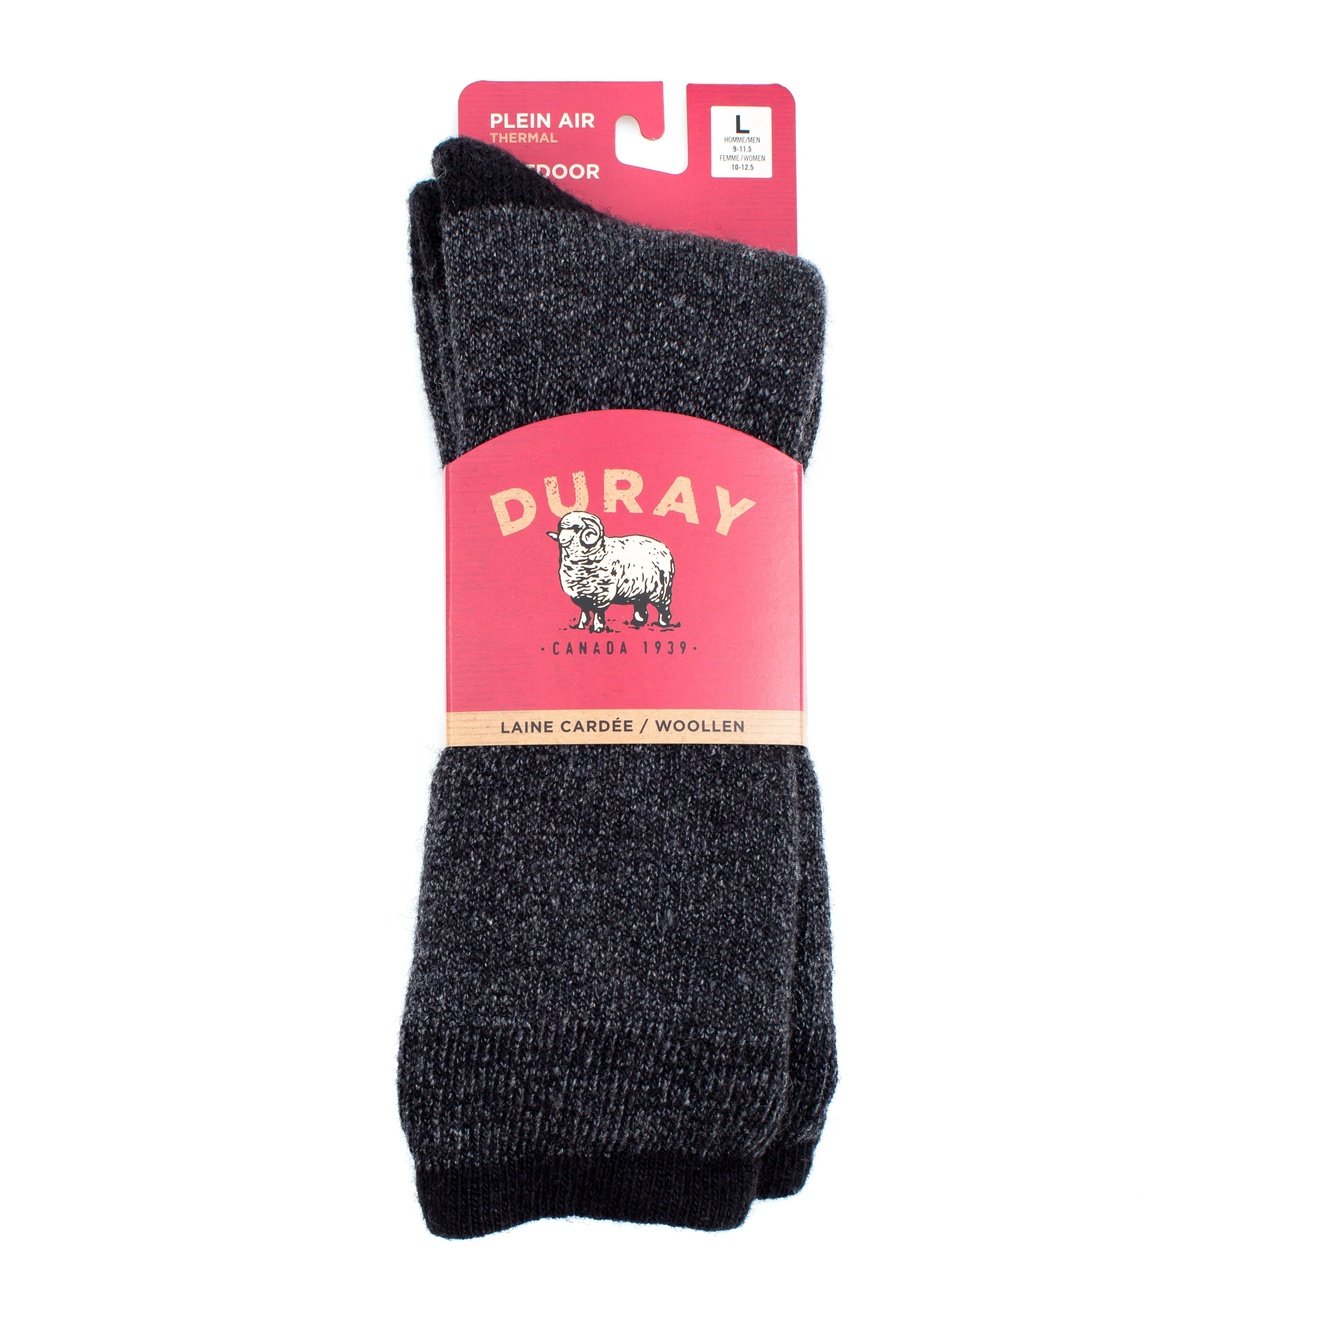 Duray wool socks